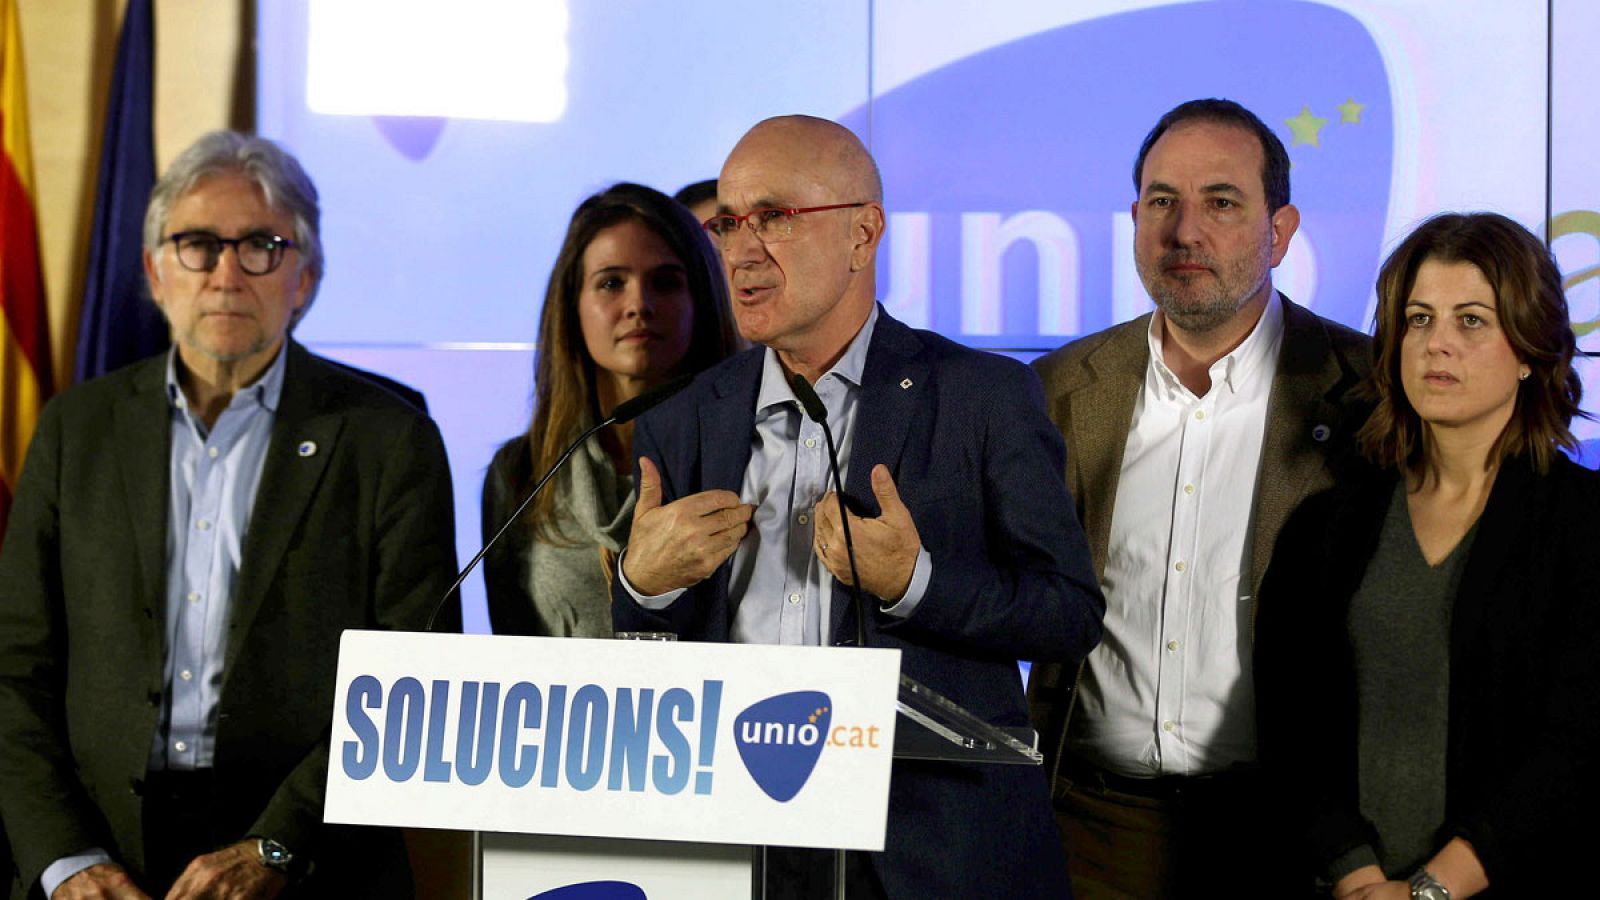 El cabeza de lista de Unió, Josep Antoni DurÁn Lleida, comparece tras conocer los resultados de las elecciones generales de 2015.